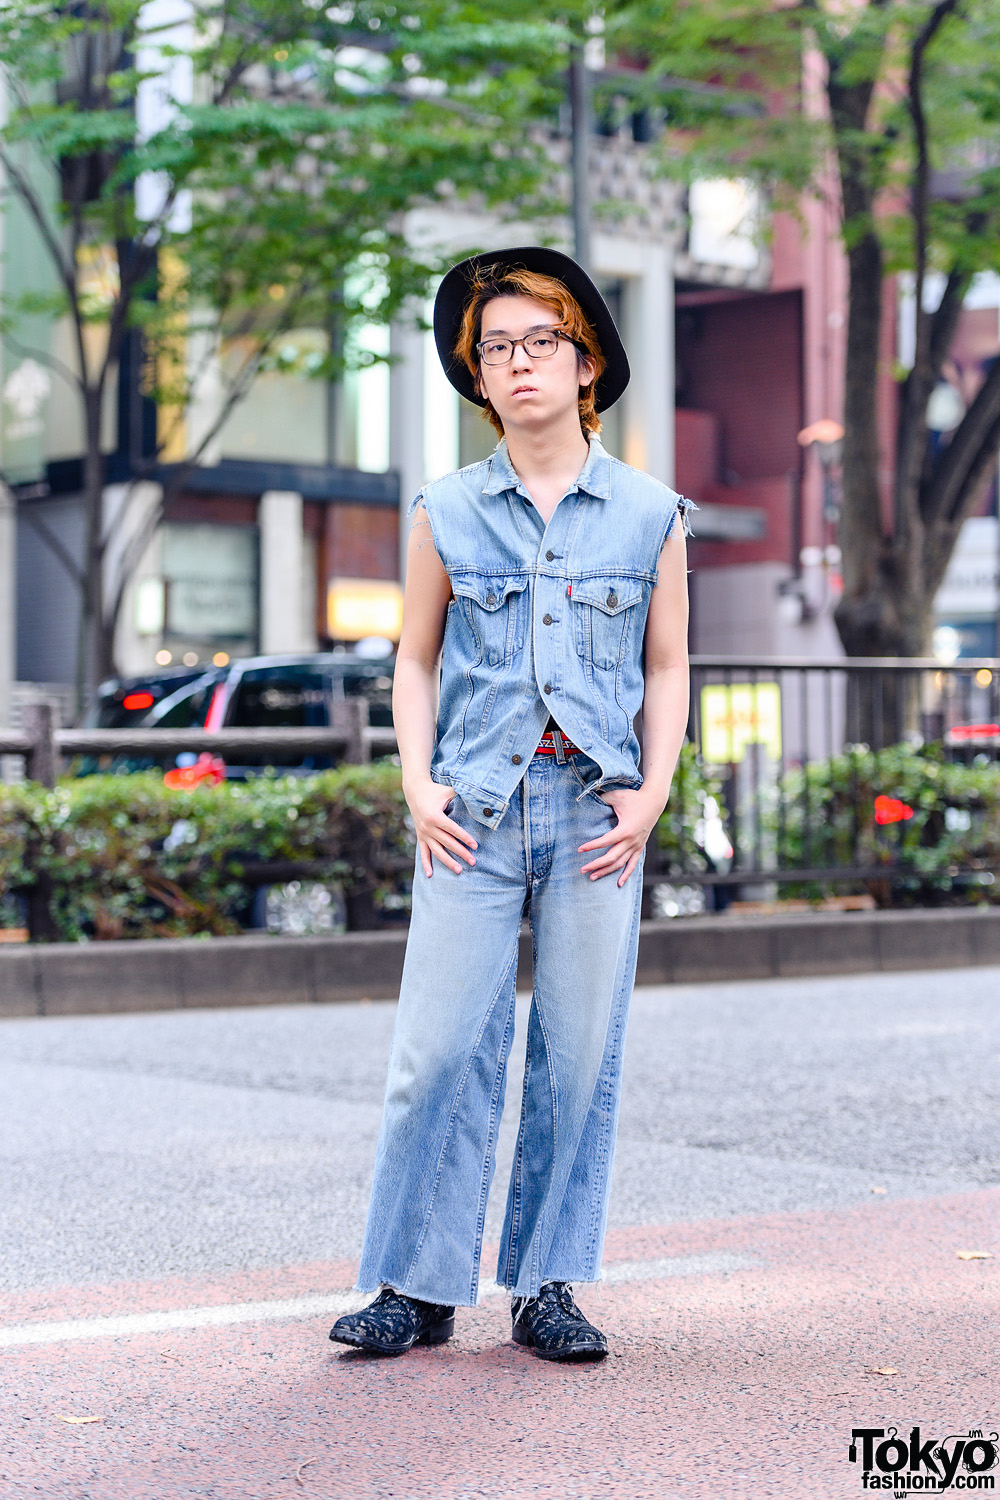 All Denim Menswear Style in Tokyo w/ Yohji Yamamoto S'yte Hat, Levi's Vest, B Side Jeans & Rynshu Lace Loafers